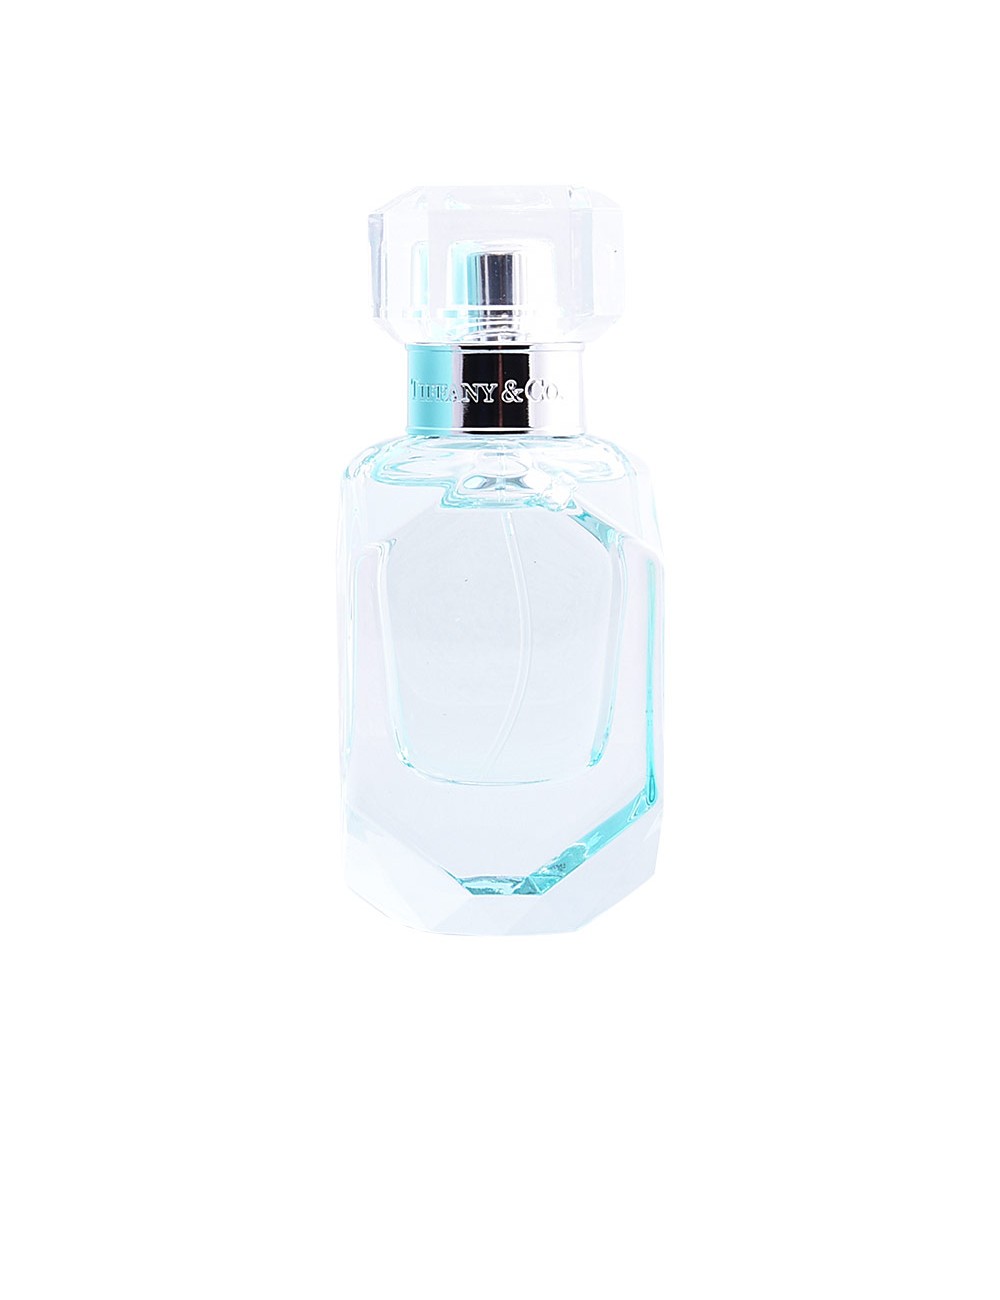 TIFFANY & CO INTENSE eau de parfum vaporisateur